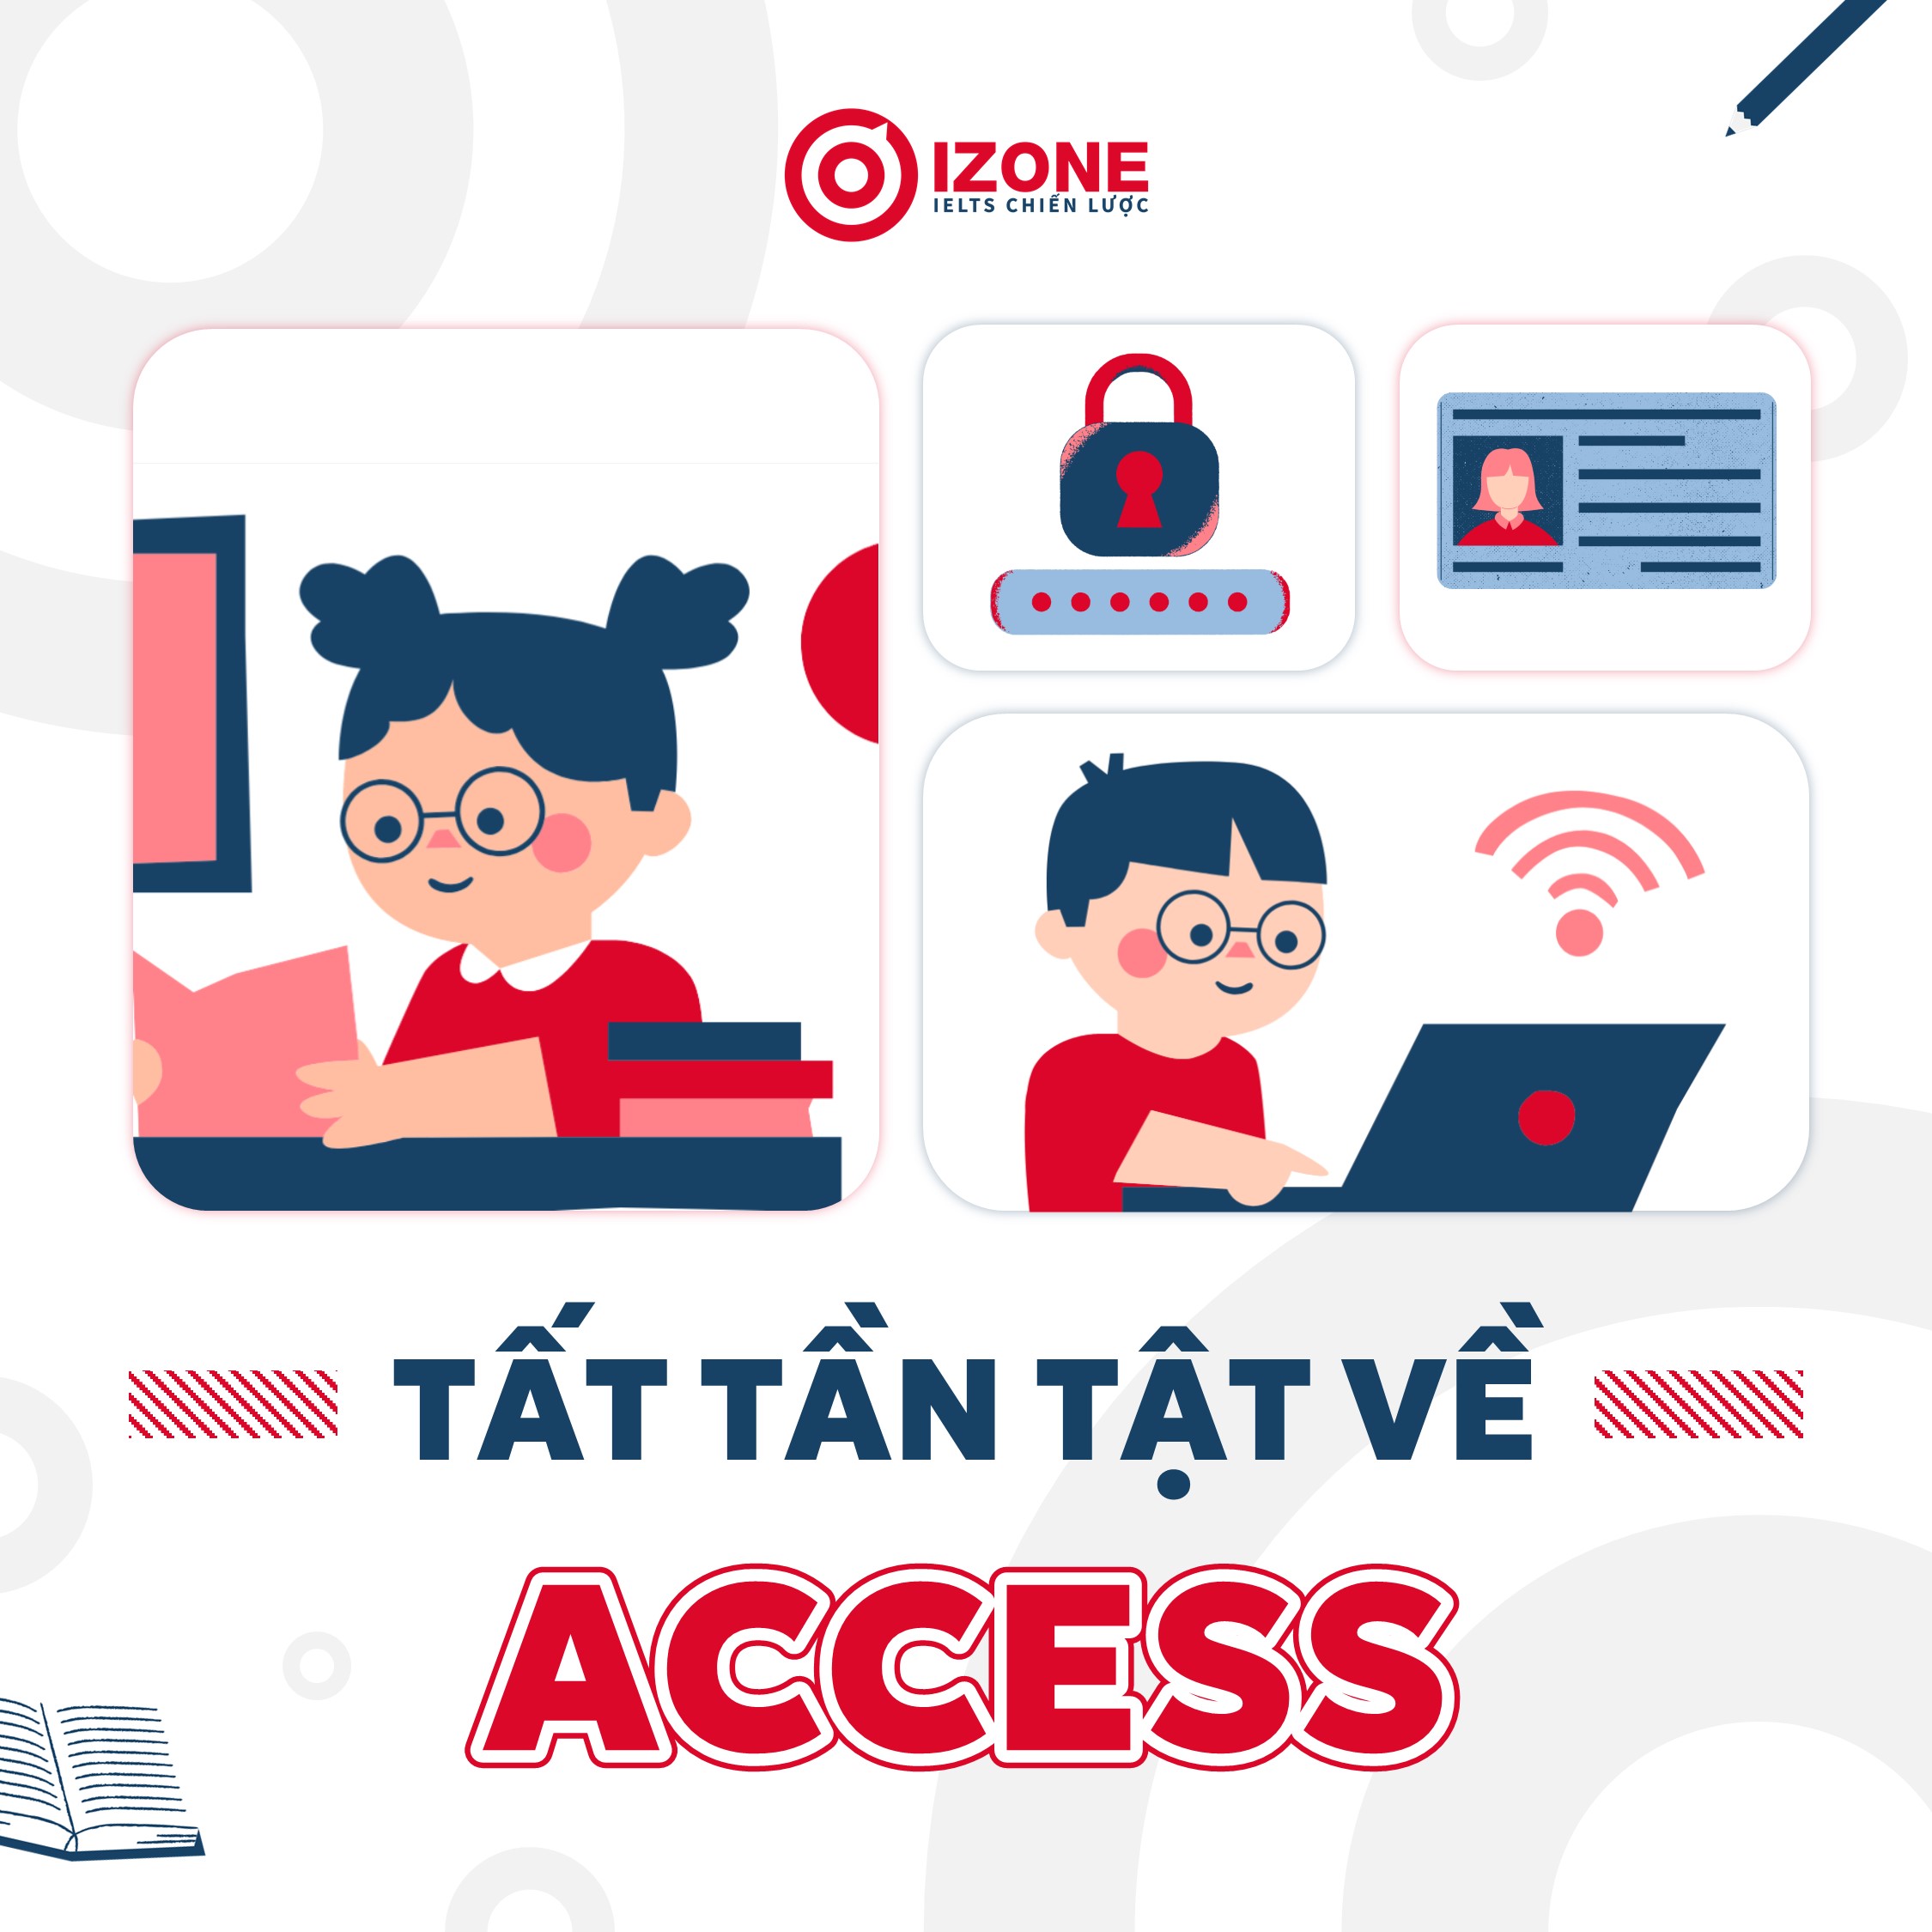 Access đi với giới từ gì? Tất tần tật về Access trong tiếng Anh